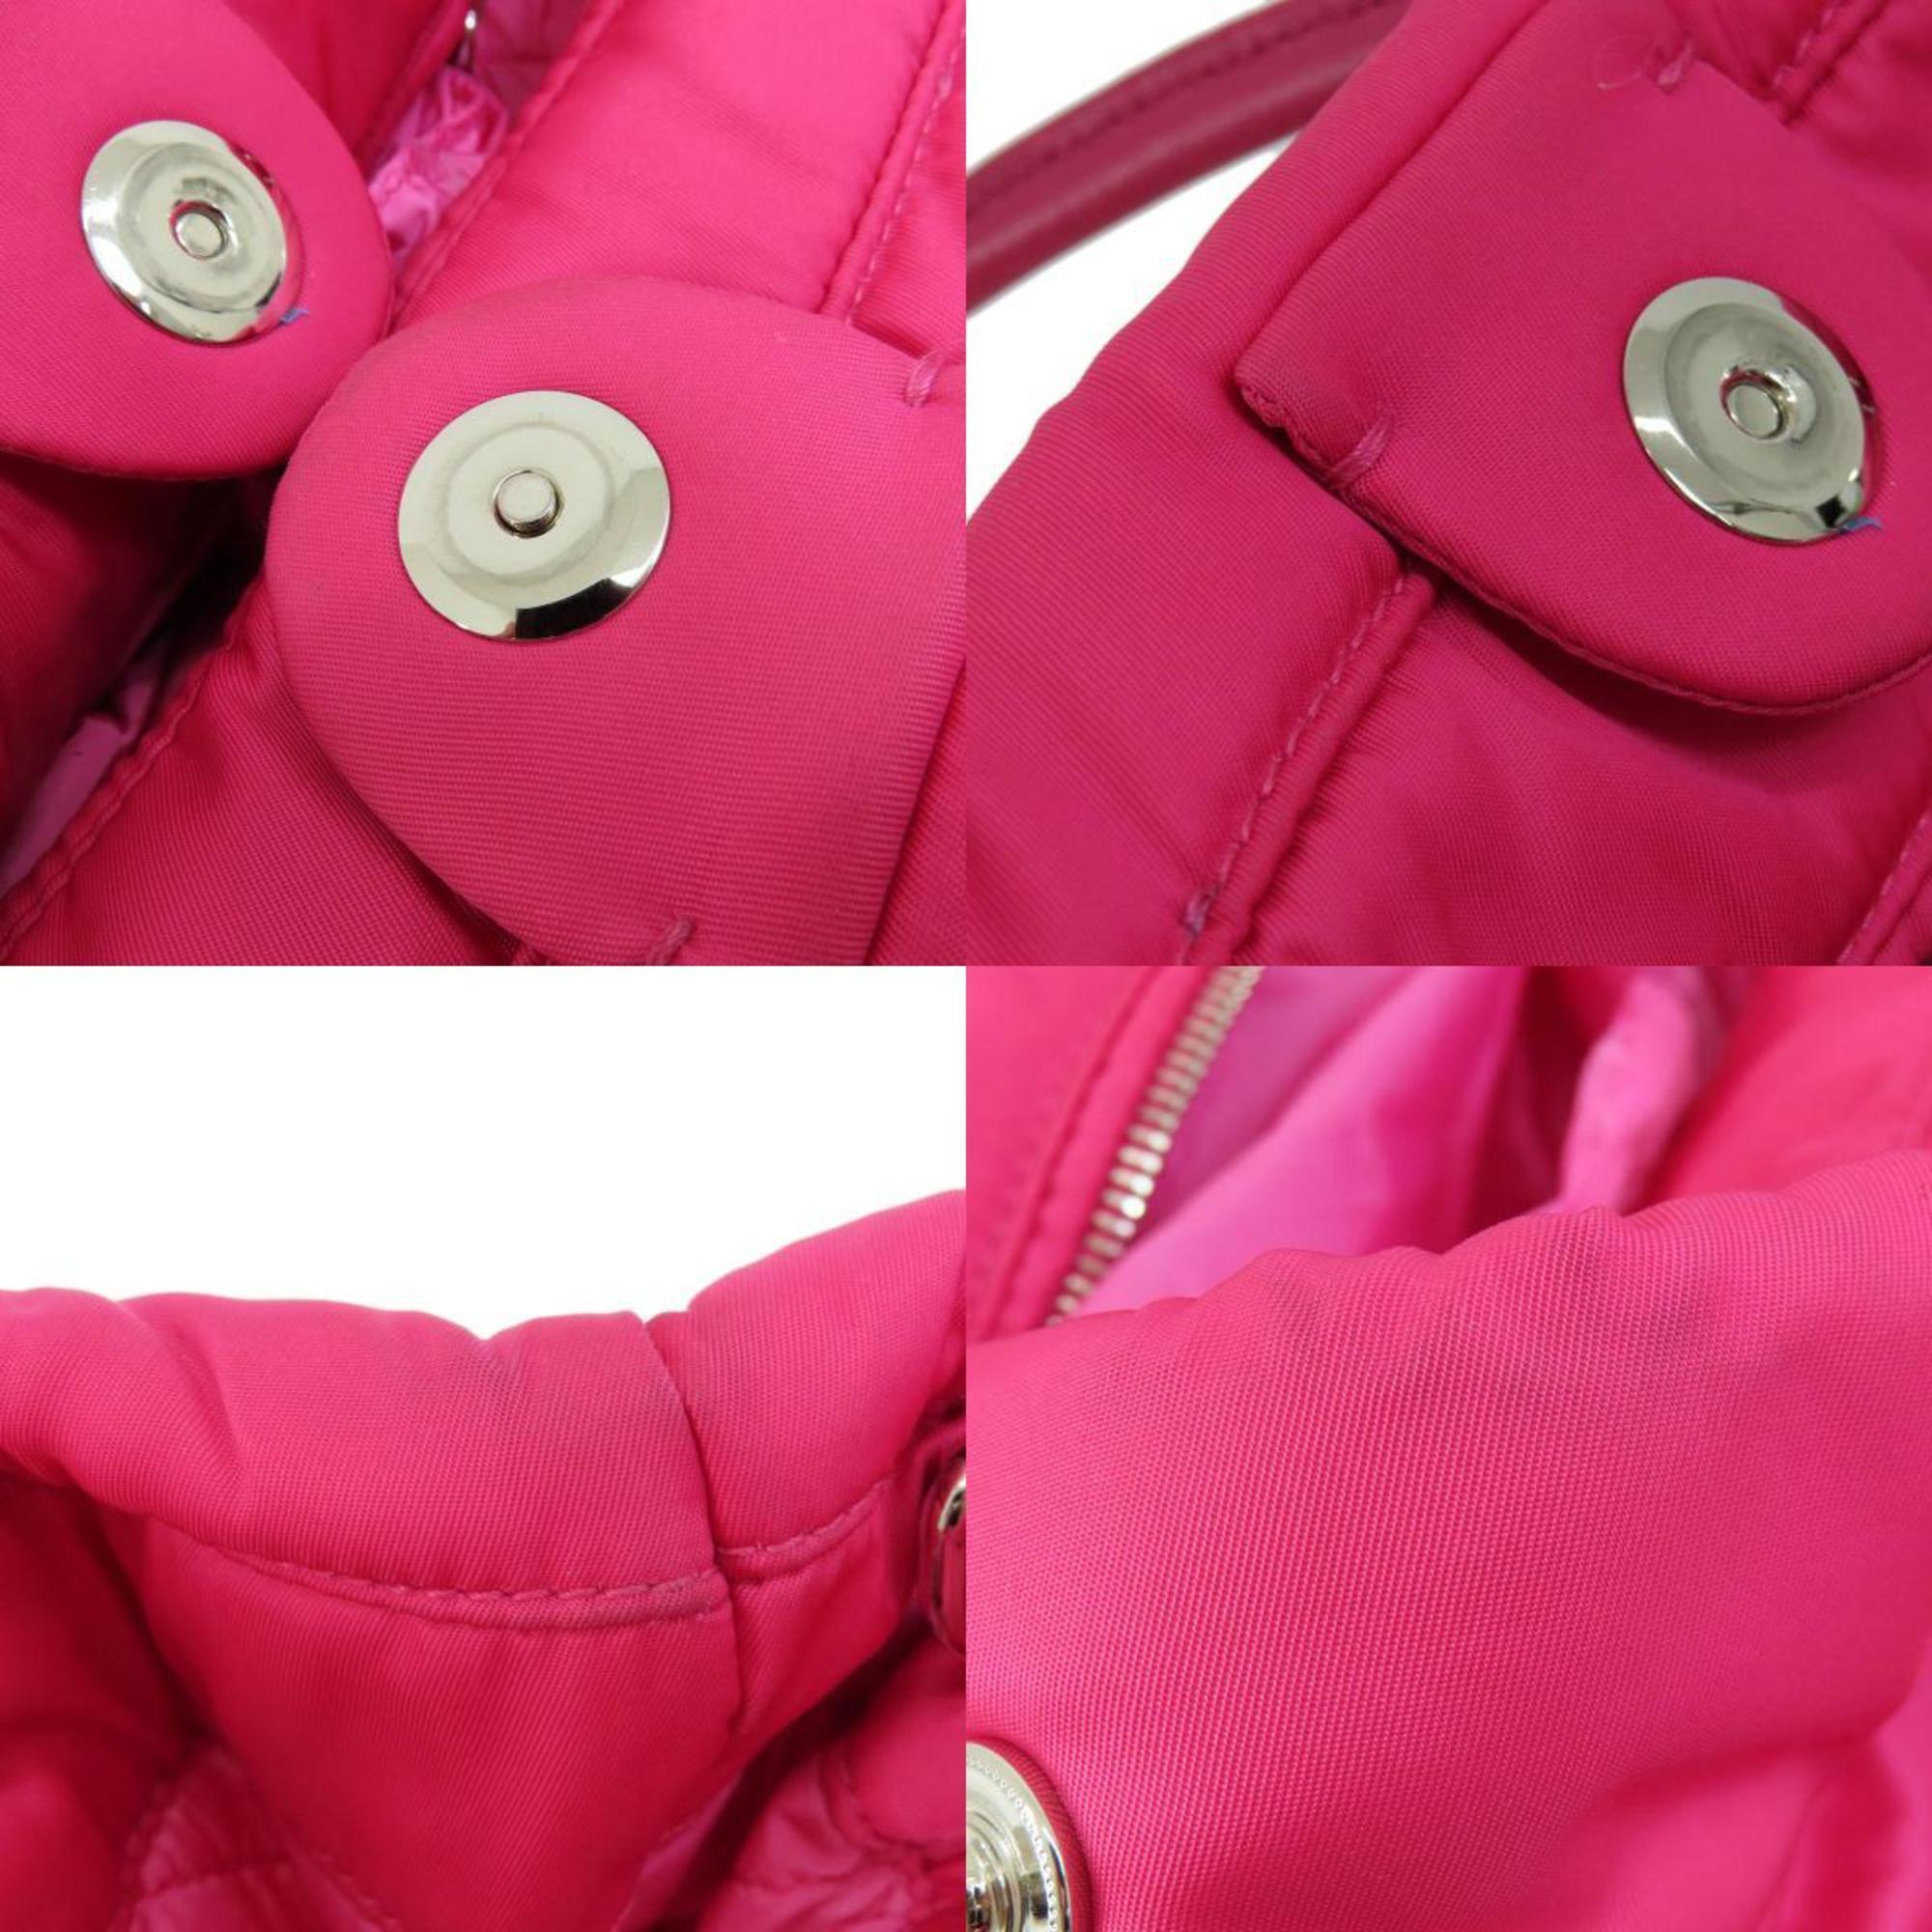 Prada BN2771 Metal fittings handbag nylon material ladies